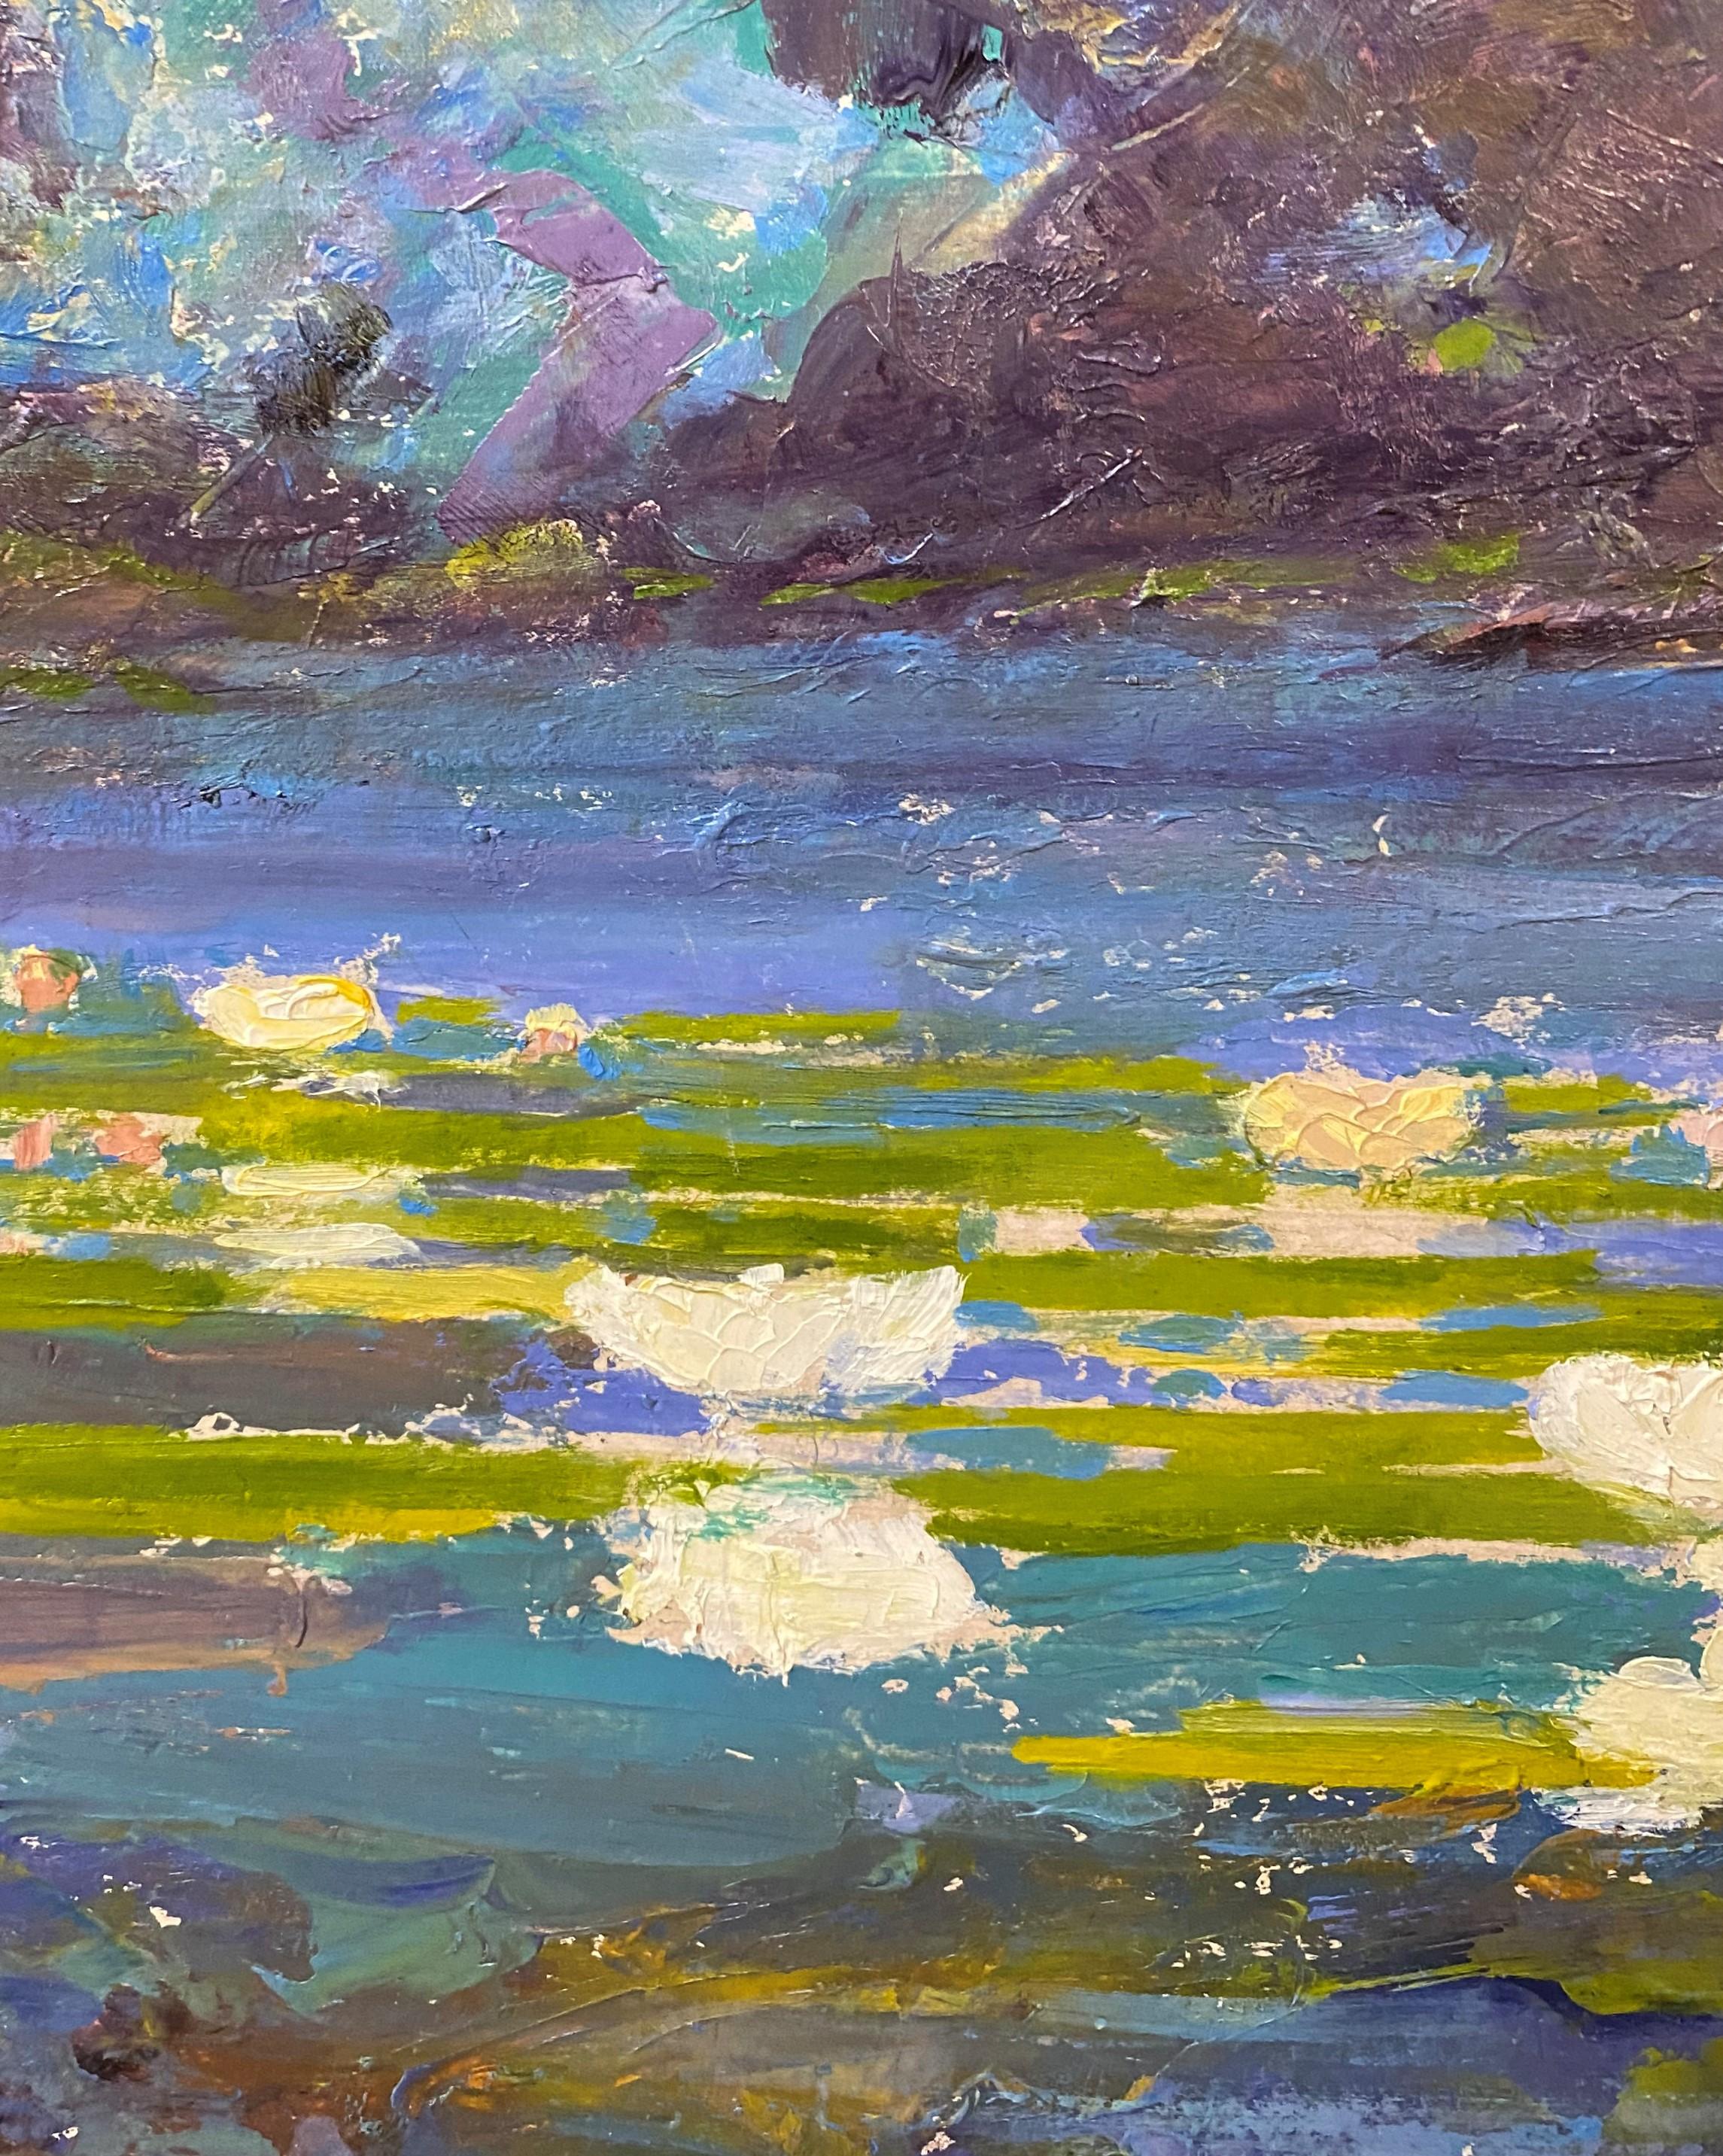 Paysage impressionniste d'un étang avec des nénuphars par l'artiste américain William Baxter Closson (1848-1926). Closson est né à Thetford, dans le Vermont, et a étudié à l'Institut Lowell de Boston. Il a commencé sa carrière comme graveur pour le